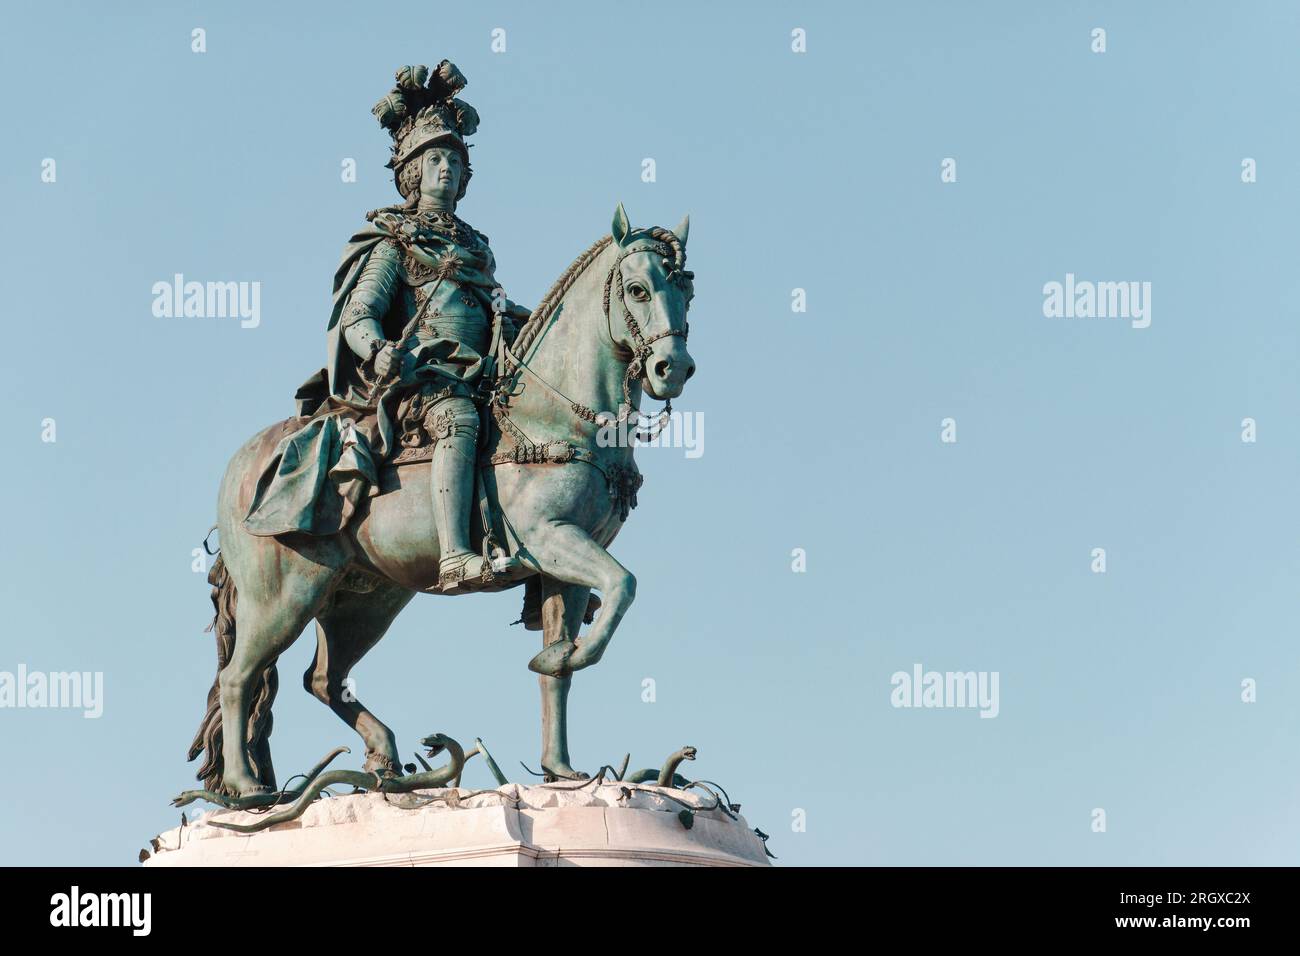 Historische Statue von König José I. auf dem Commerce Plaza in Lissabon, Portugal. Reiterstatue, 1775 eingeweiht. Platz kopieren, Text platzieren. Stockfoto